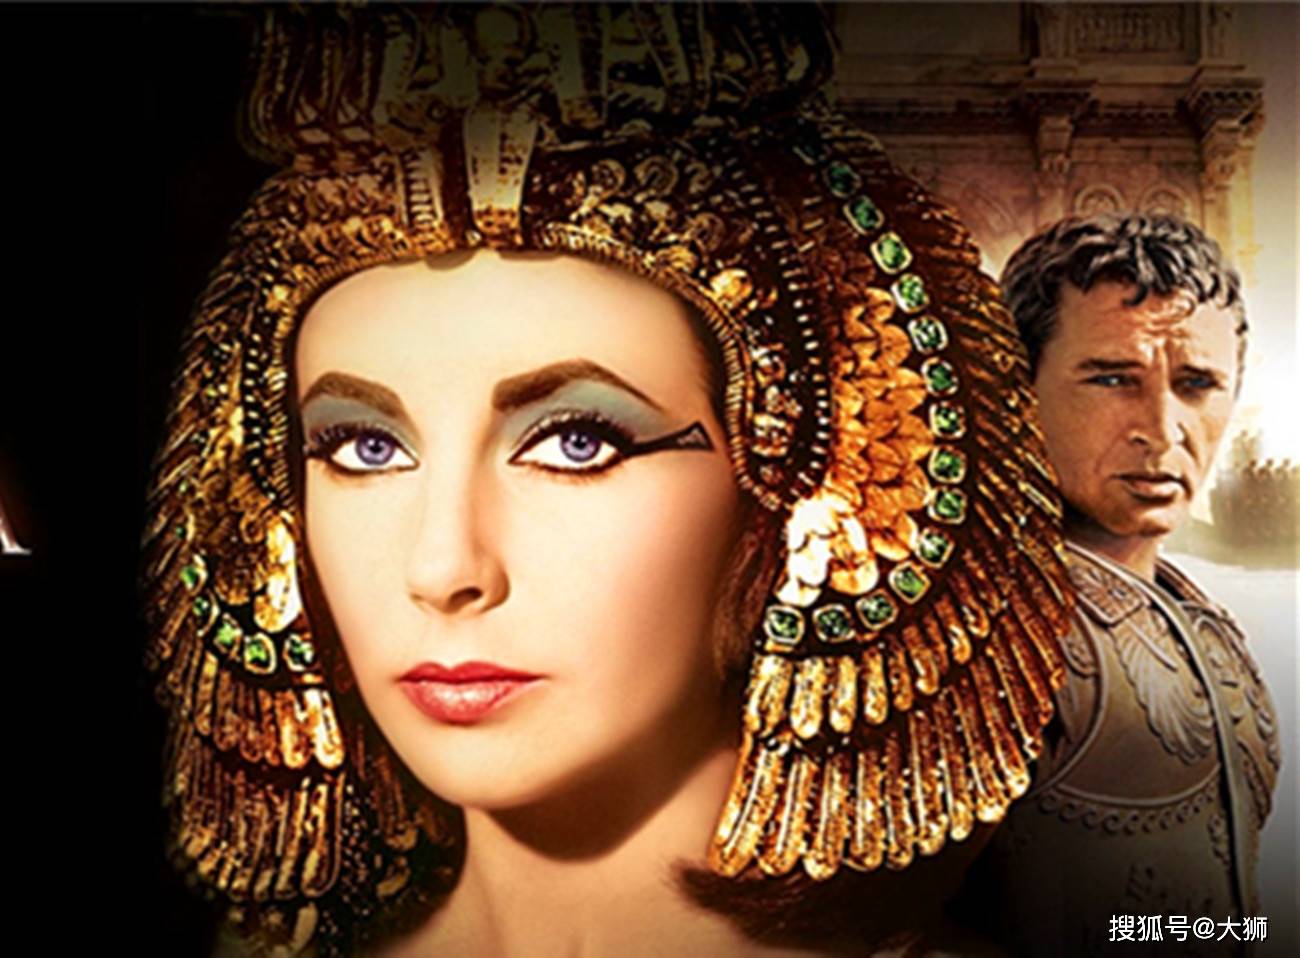 埃及艳后 埃及女王克利奥帕特拉 埃及 - Pixabay上的免费照片 - Pixabay